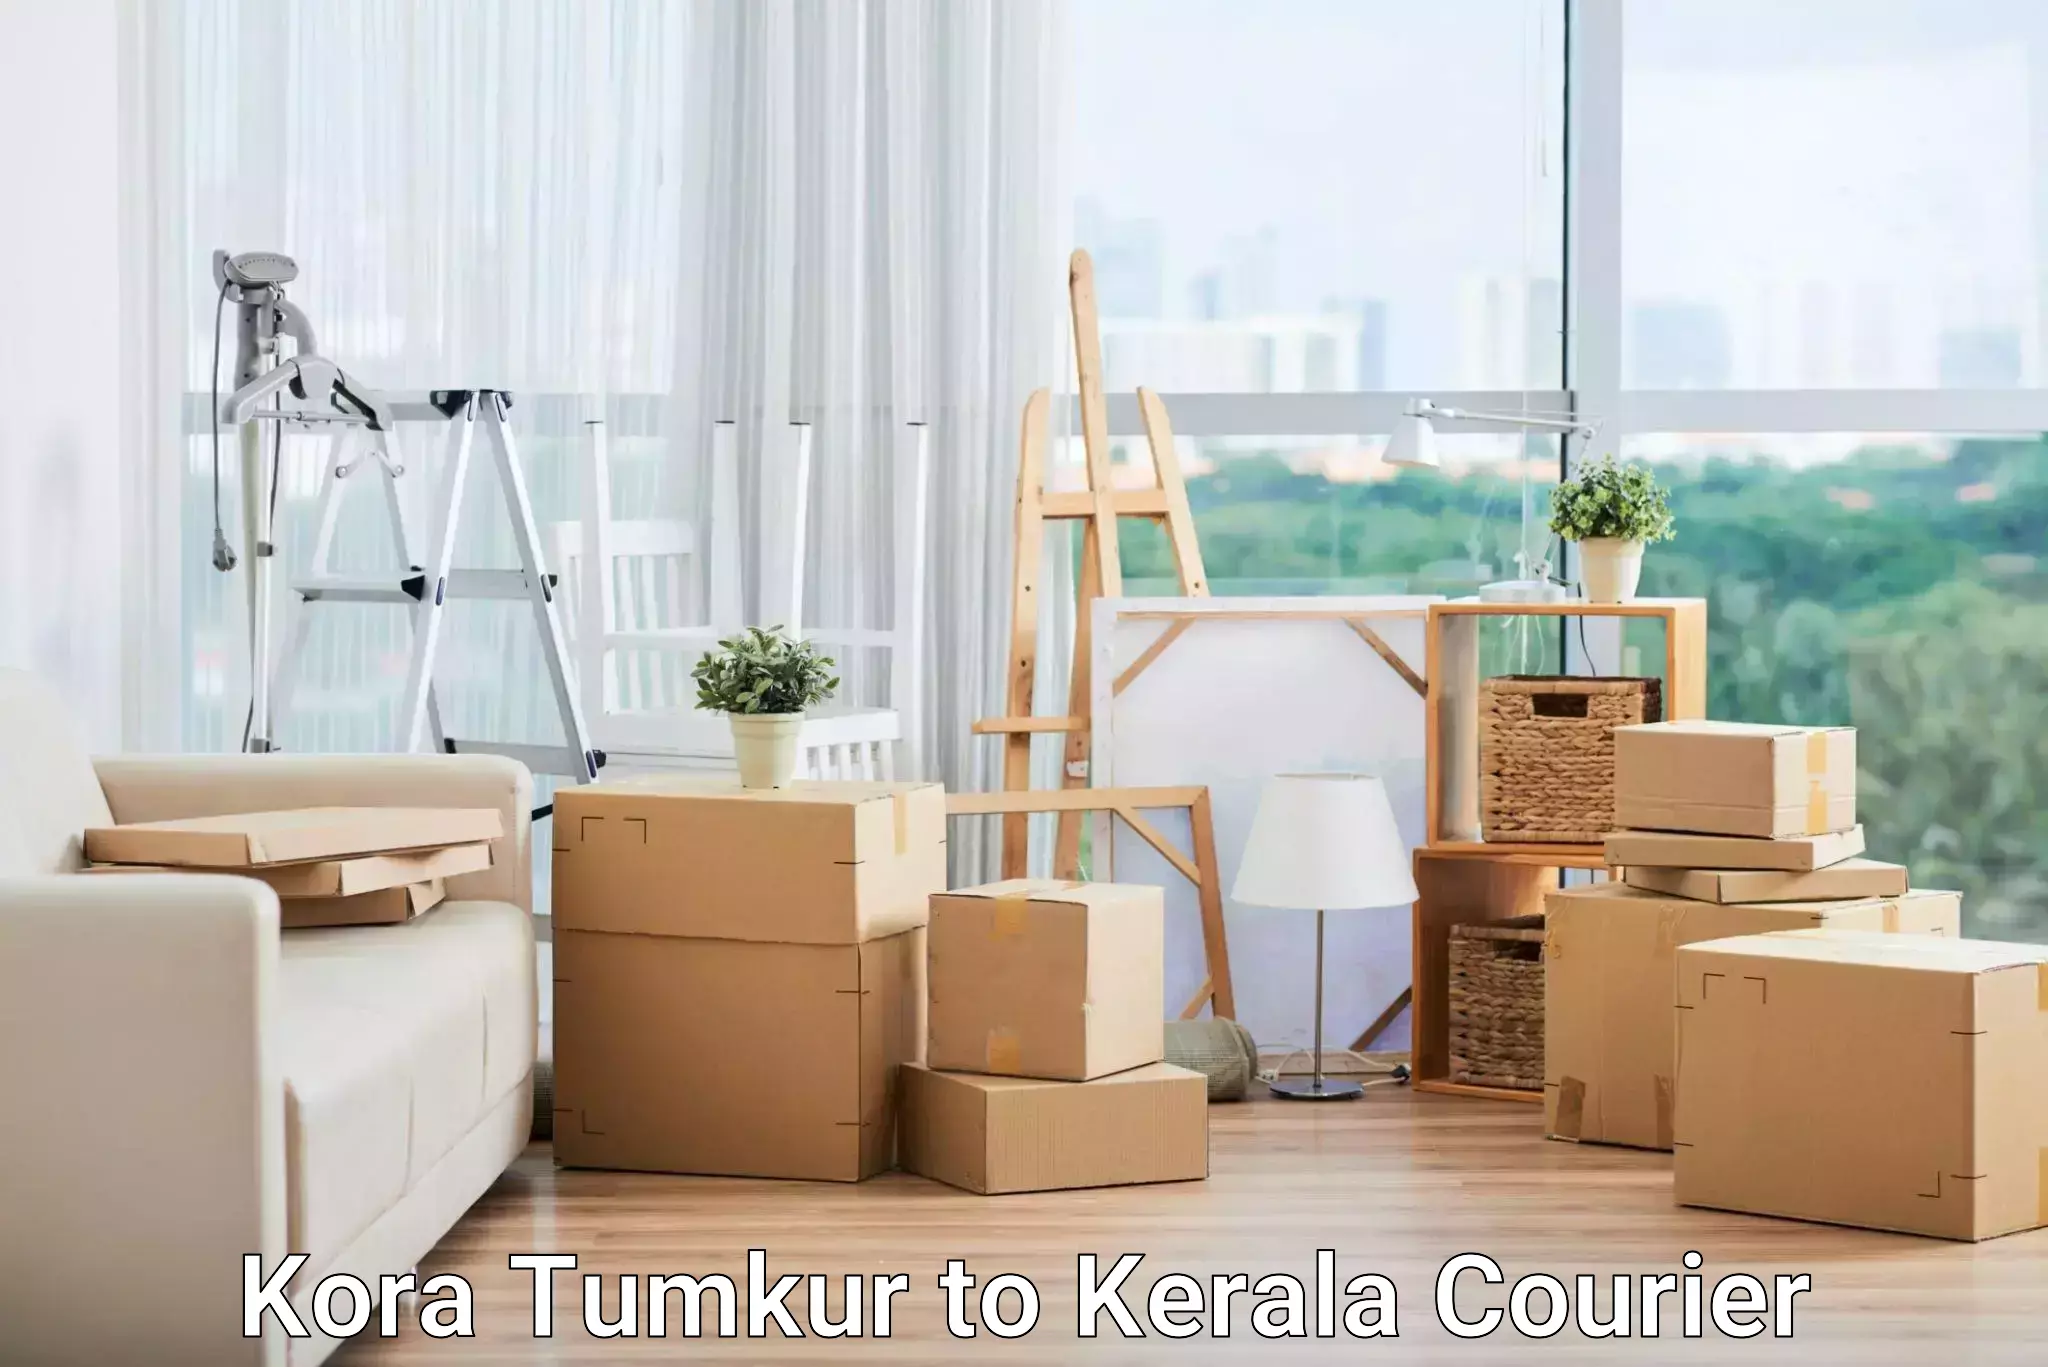 Personalized courier experiences Kora Tumkur to Tiruvalla